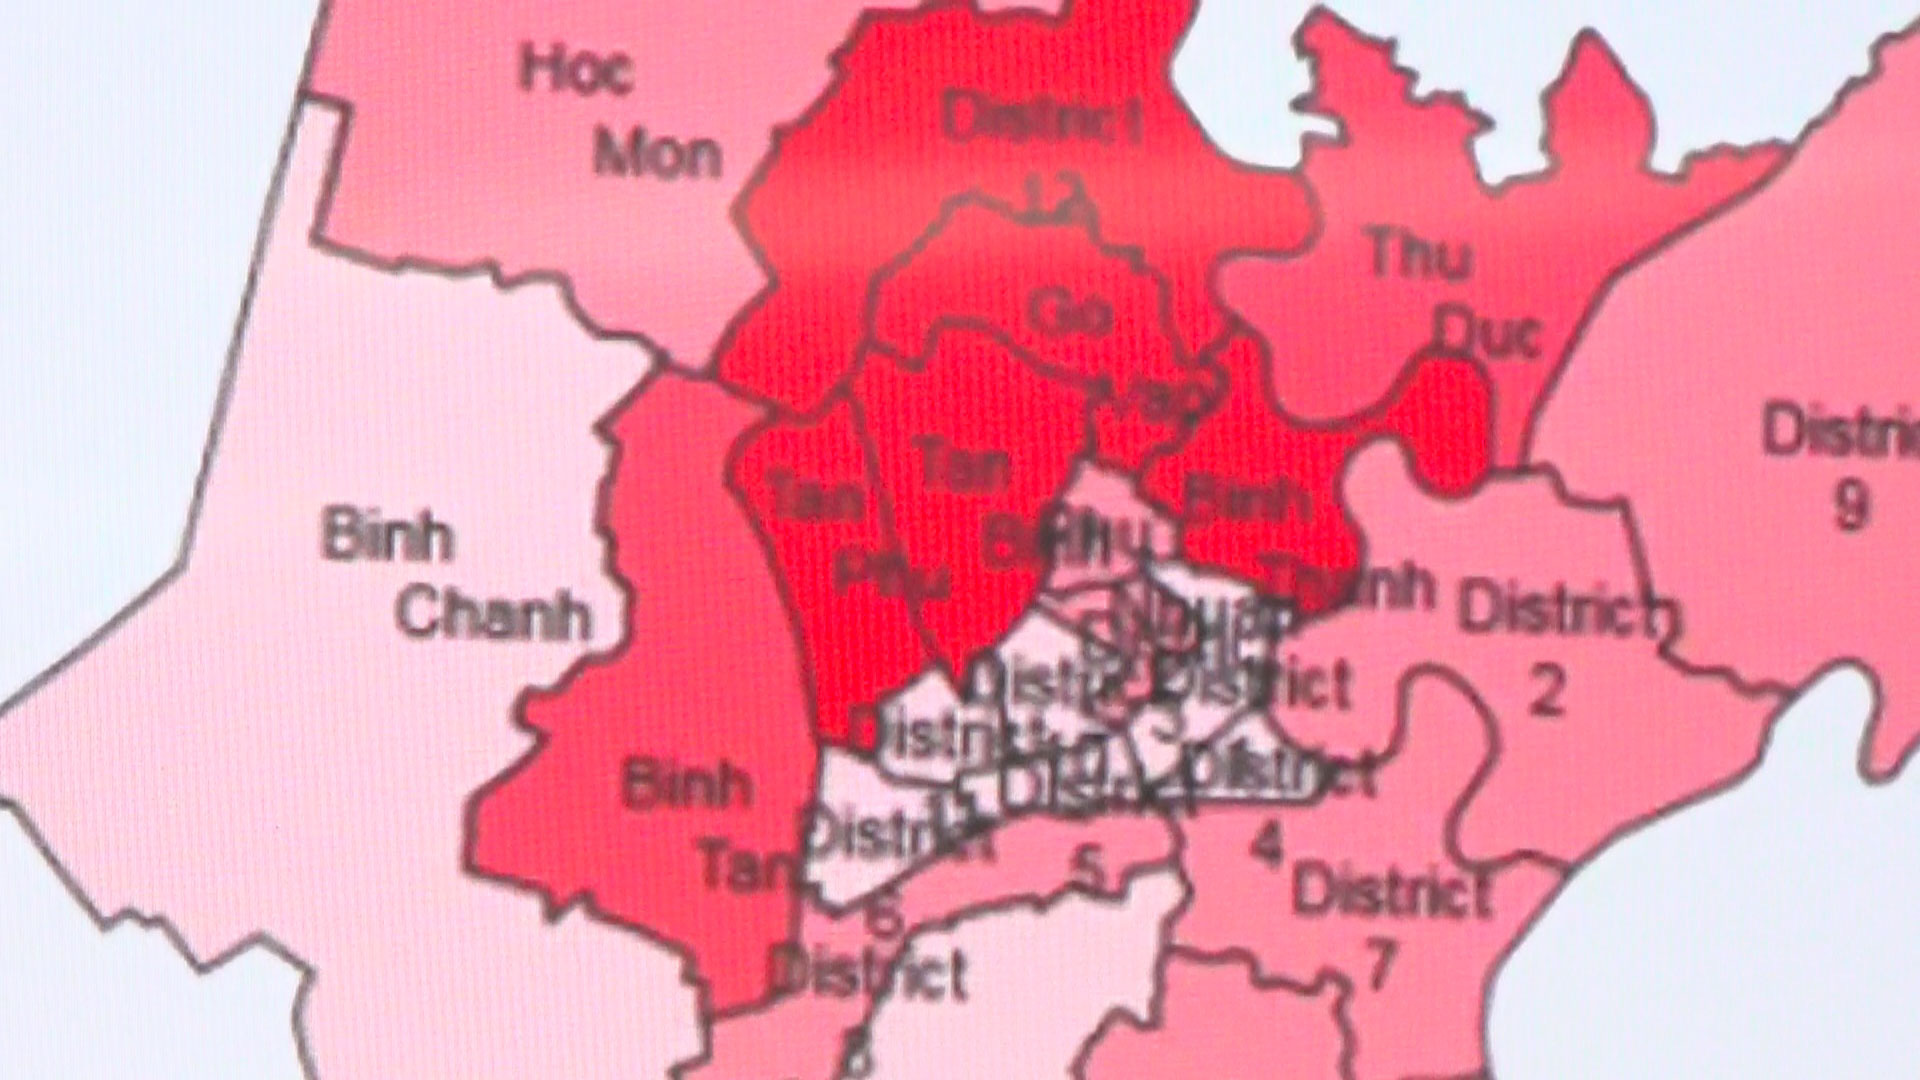 Bản đồ hỗ trợ phòng chống dịch Covid-19: Bản đồ này sẽ giúp bạn nhanh chóng tìm kiếm các khu vực có ca nhiễm Covid-19 trong thành phố và cung cấp những thông tin mới nhất để đảm bảo an toàn cho bản thân và gia đình. Hãy xem ảnh để cập nhật thông tin chính xác và hiệu quả.